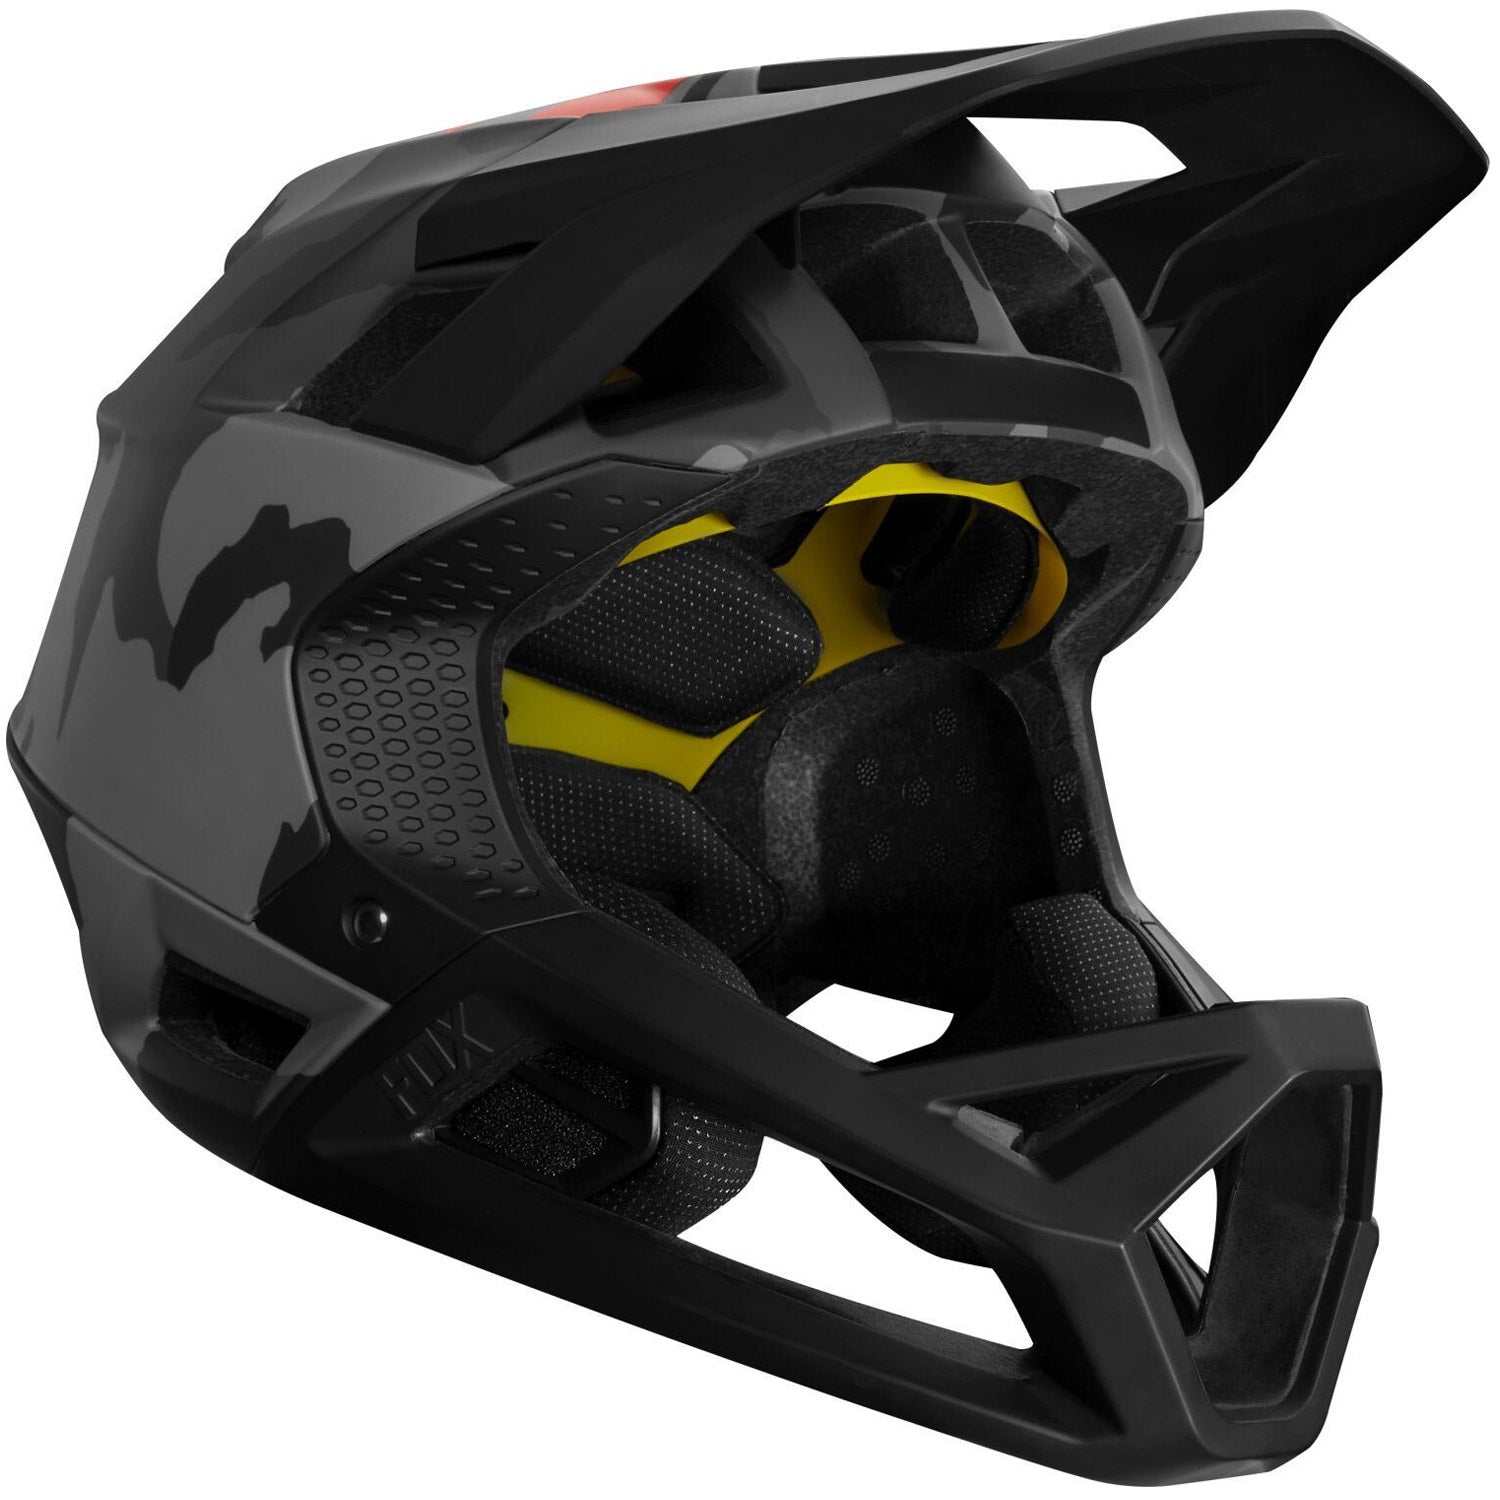 Fox Proframe helmet - Black grey | All4cycling